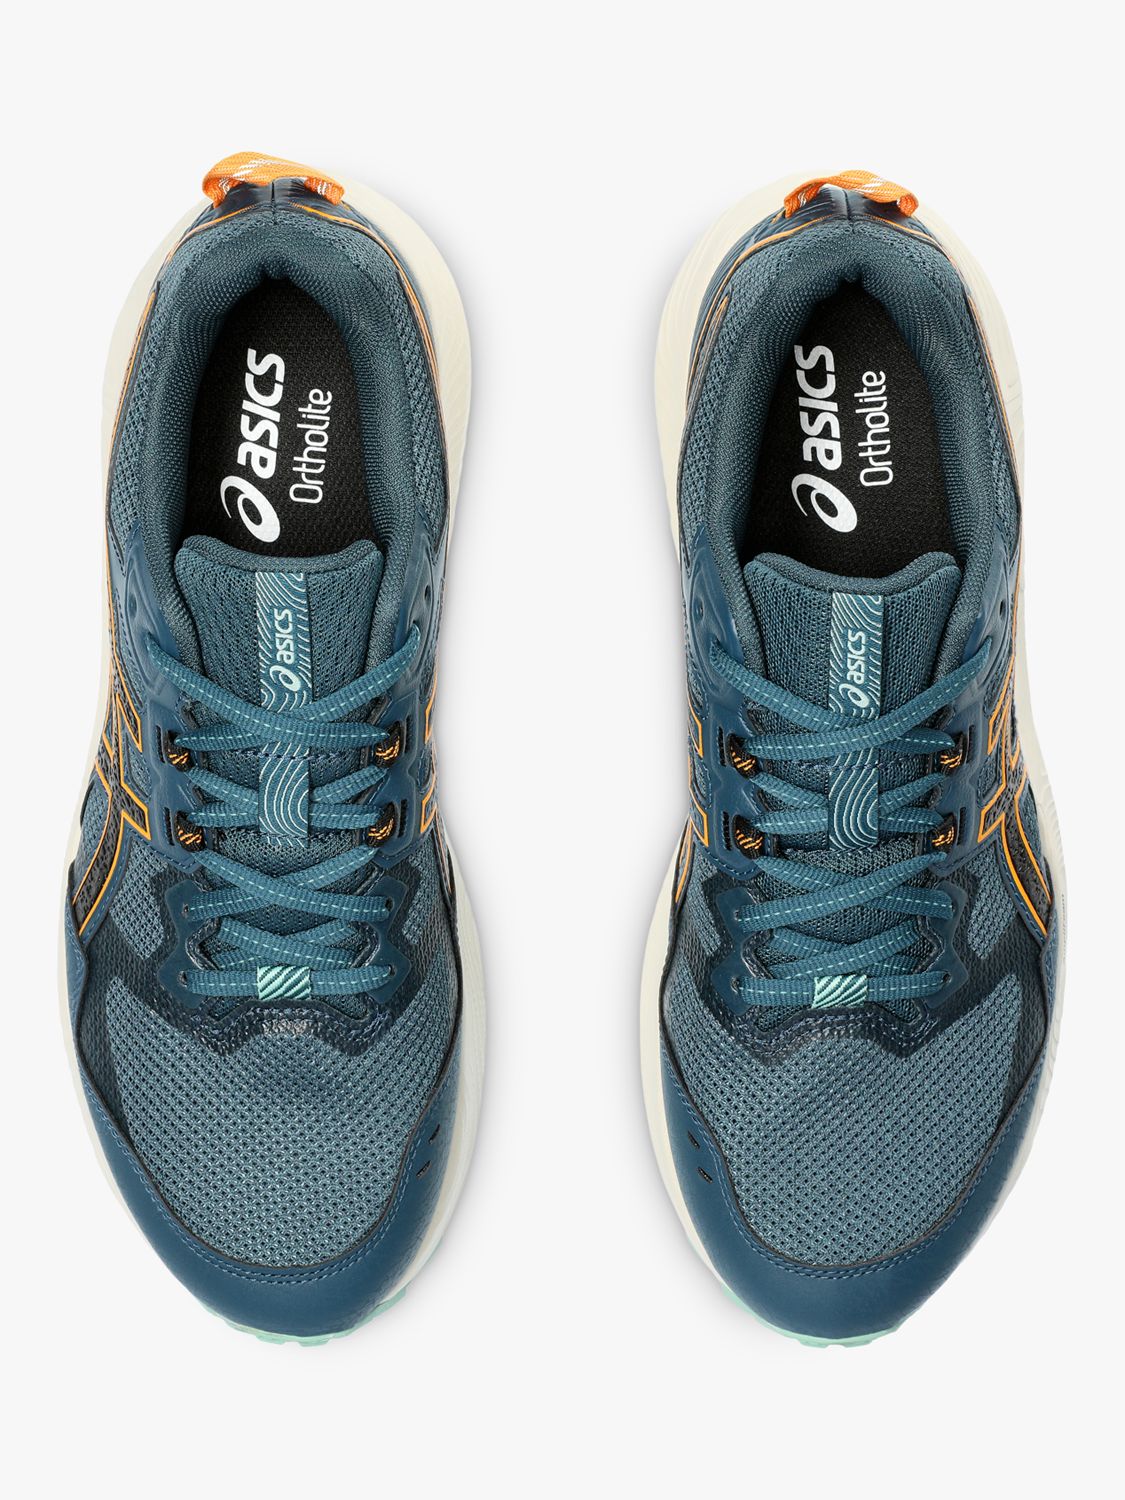 Asics GEL-SONOMA 7 Men's Trail Running Shoes, Magnetic Blue/Black, 10